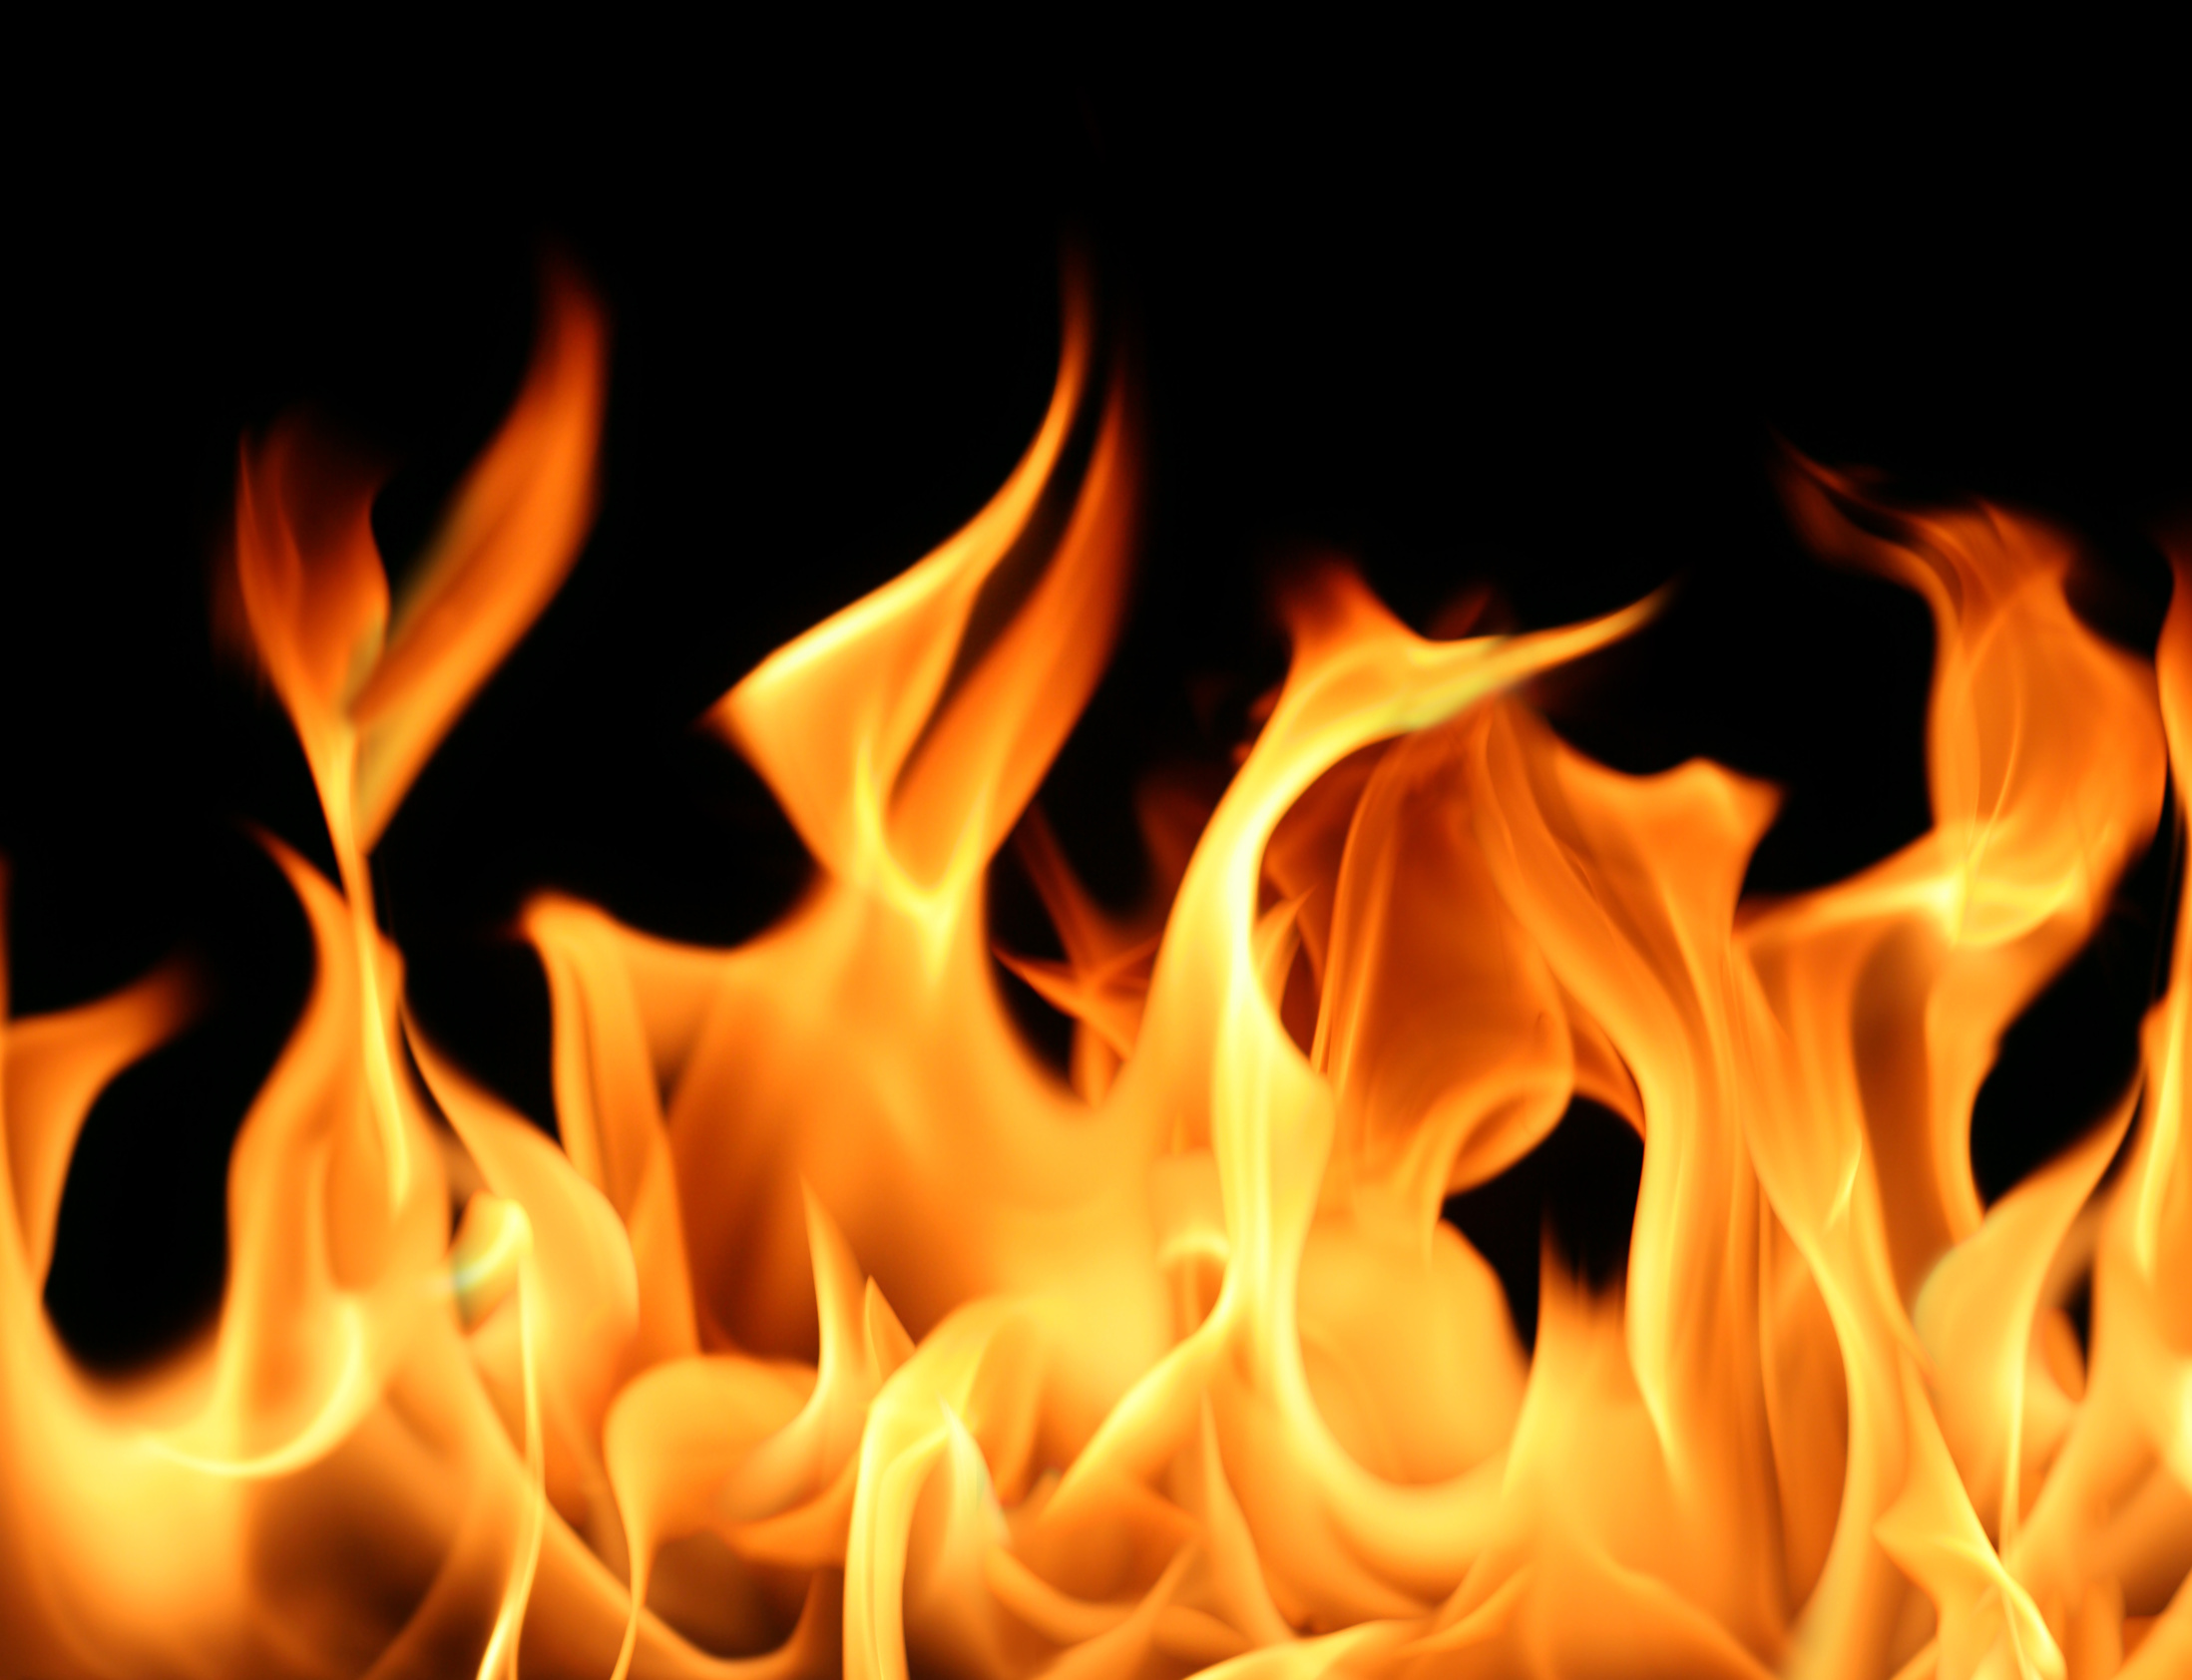 آتش گرفتن یک زن در ماکو؛ واقعیت چیست؟